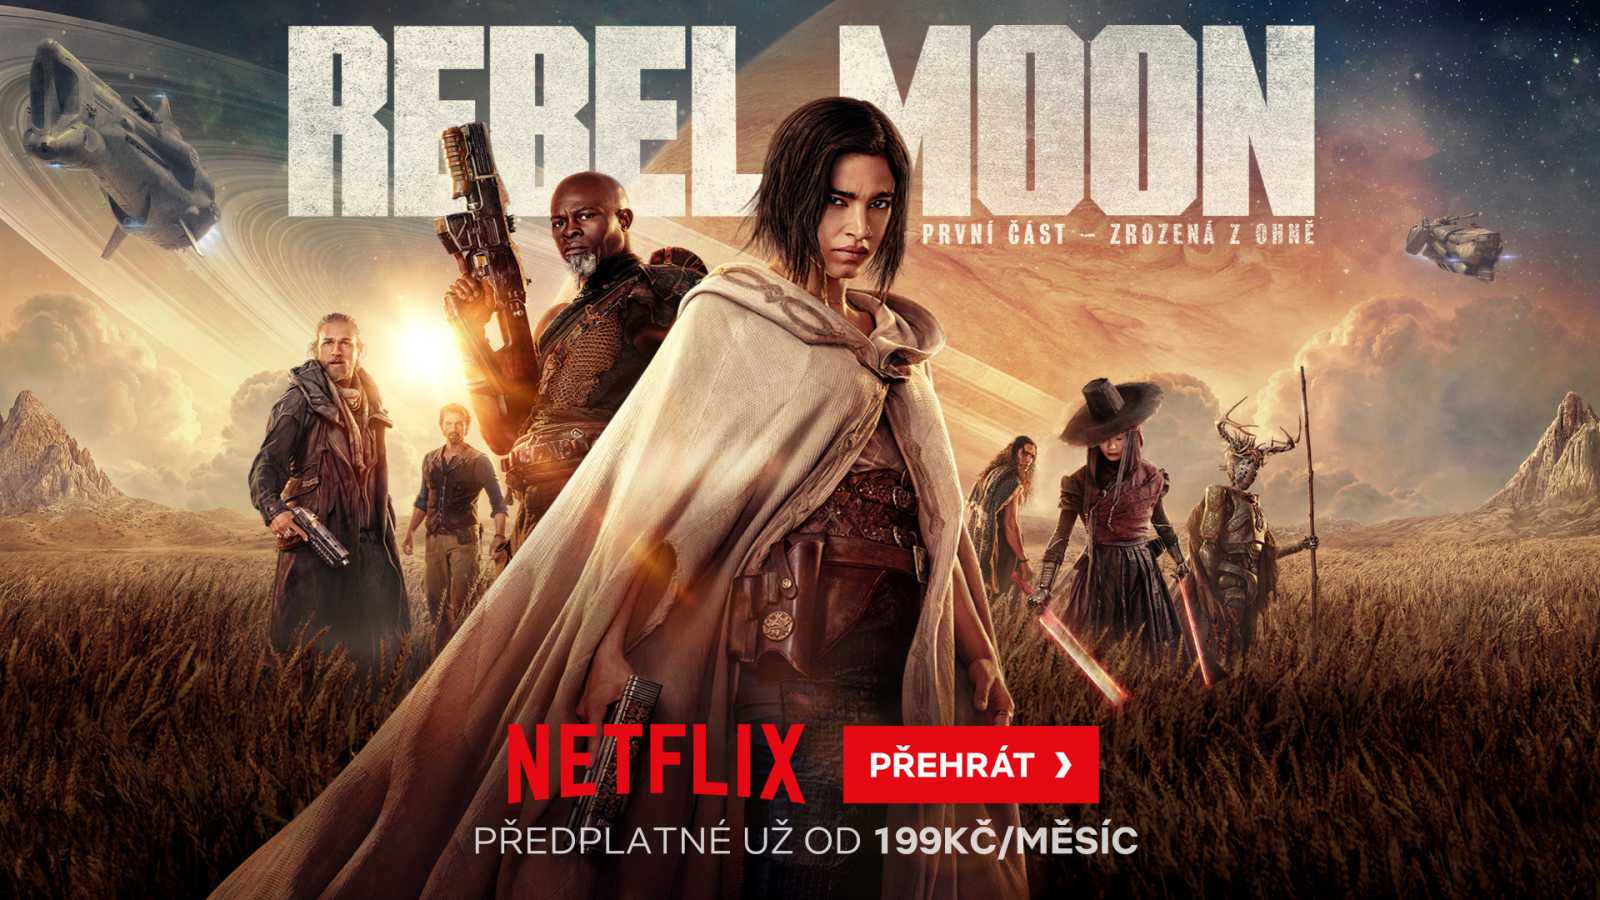 Na Netflix zamířil sci-fi snímek Rebel Moon: První část – Zrozená z ohně